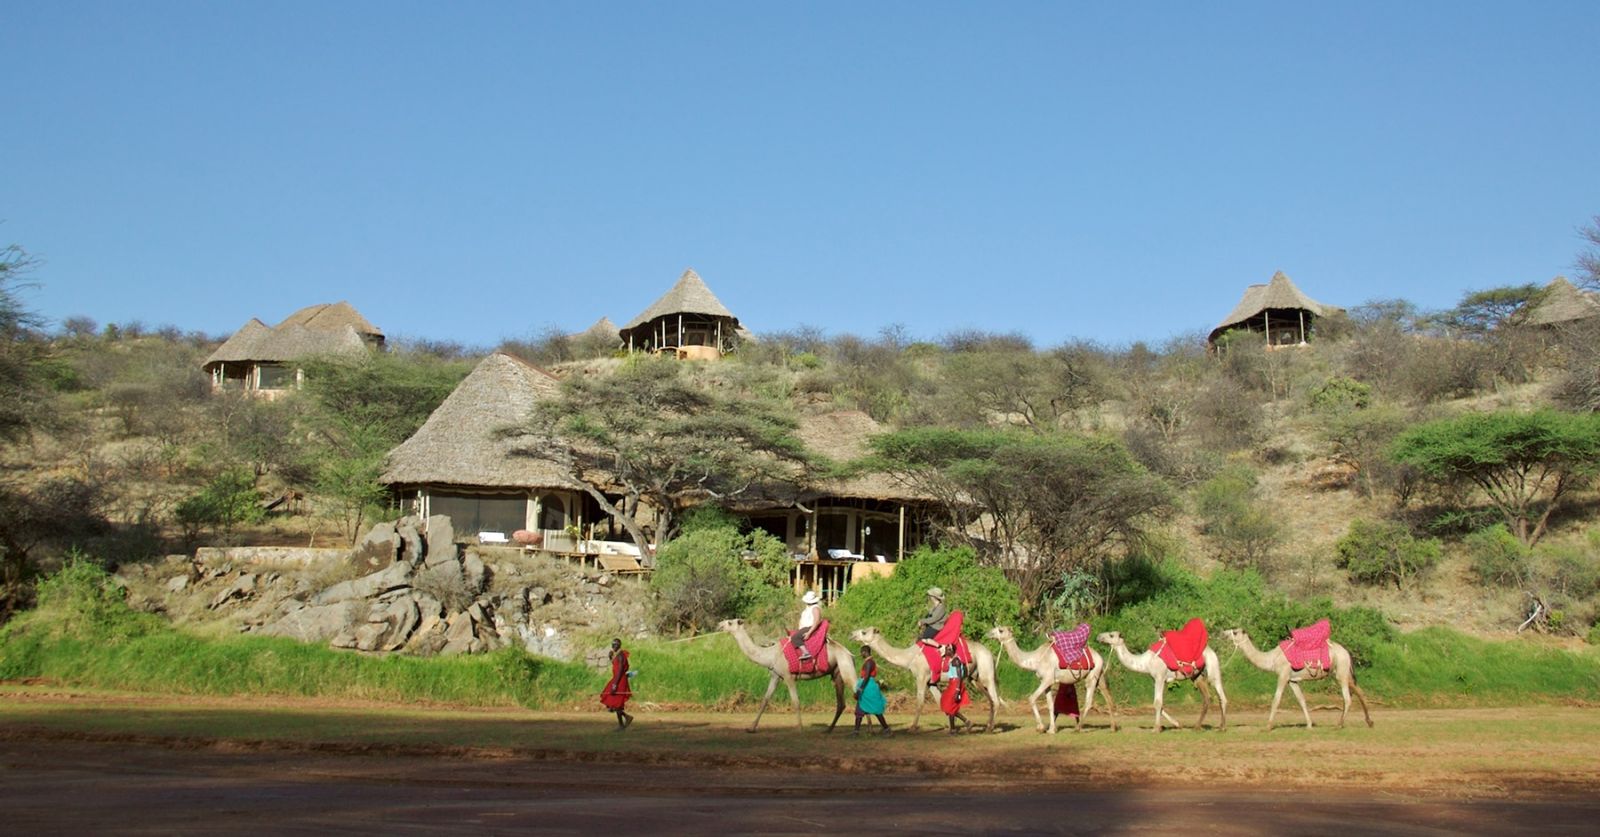 Camel safari at Sasaab in Kenya 